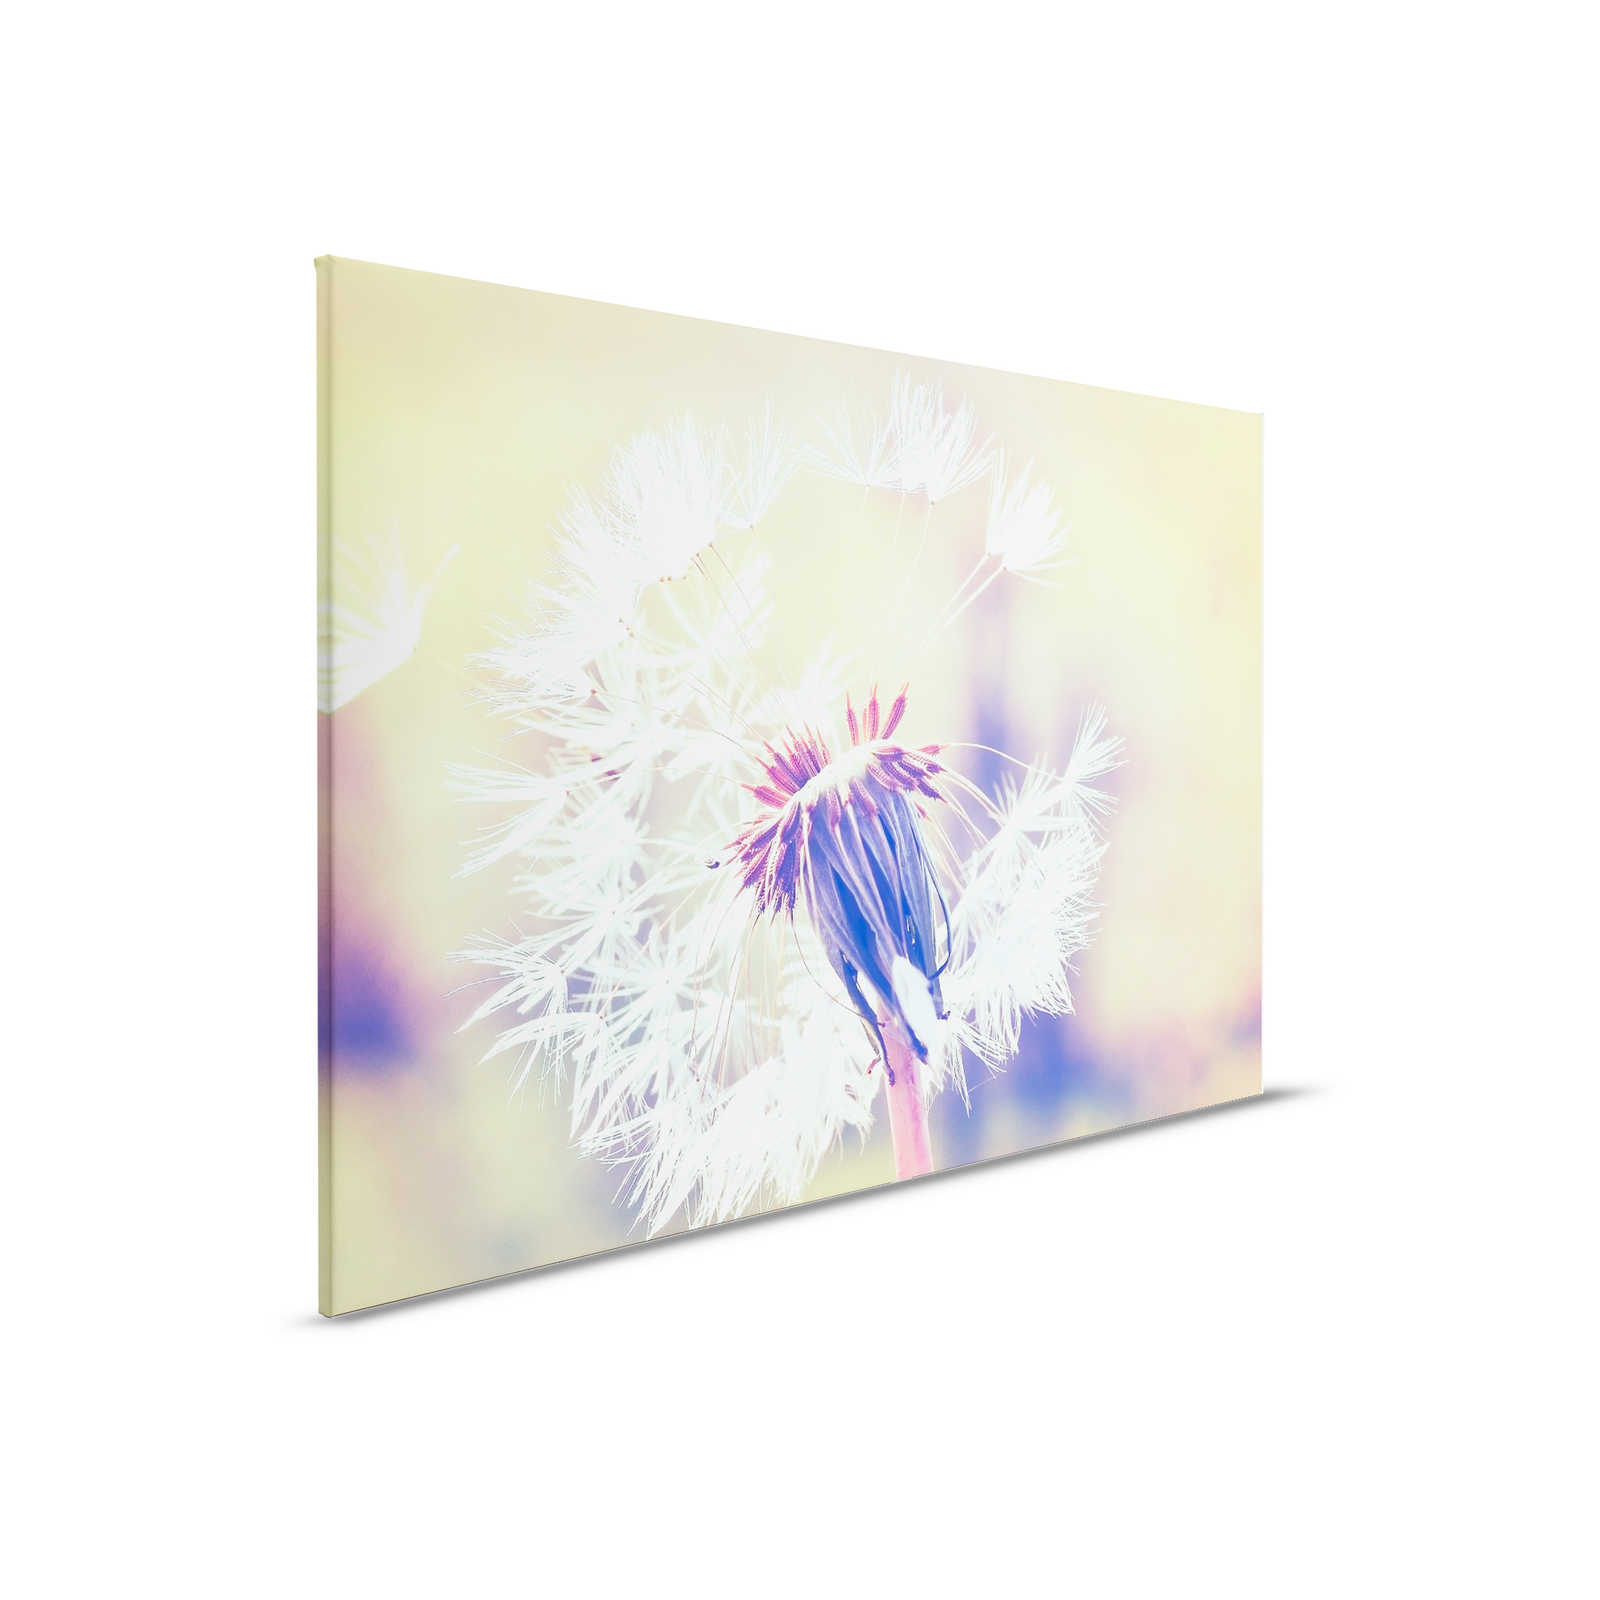 Canvas with dandelion motif | Blue, Violet, White - 0.90 m x 0.60 m
